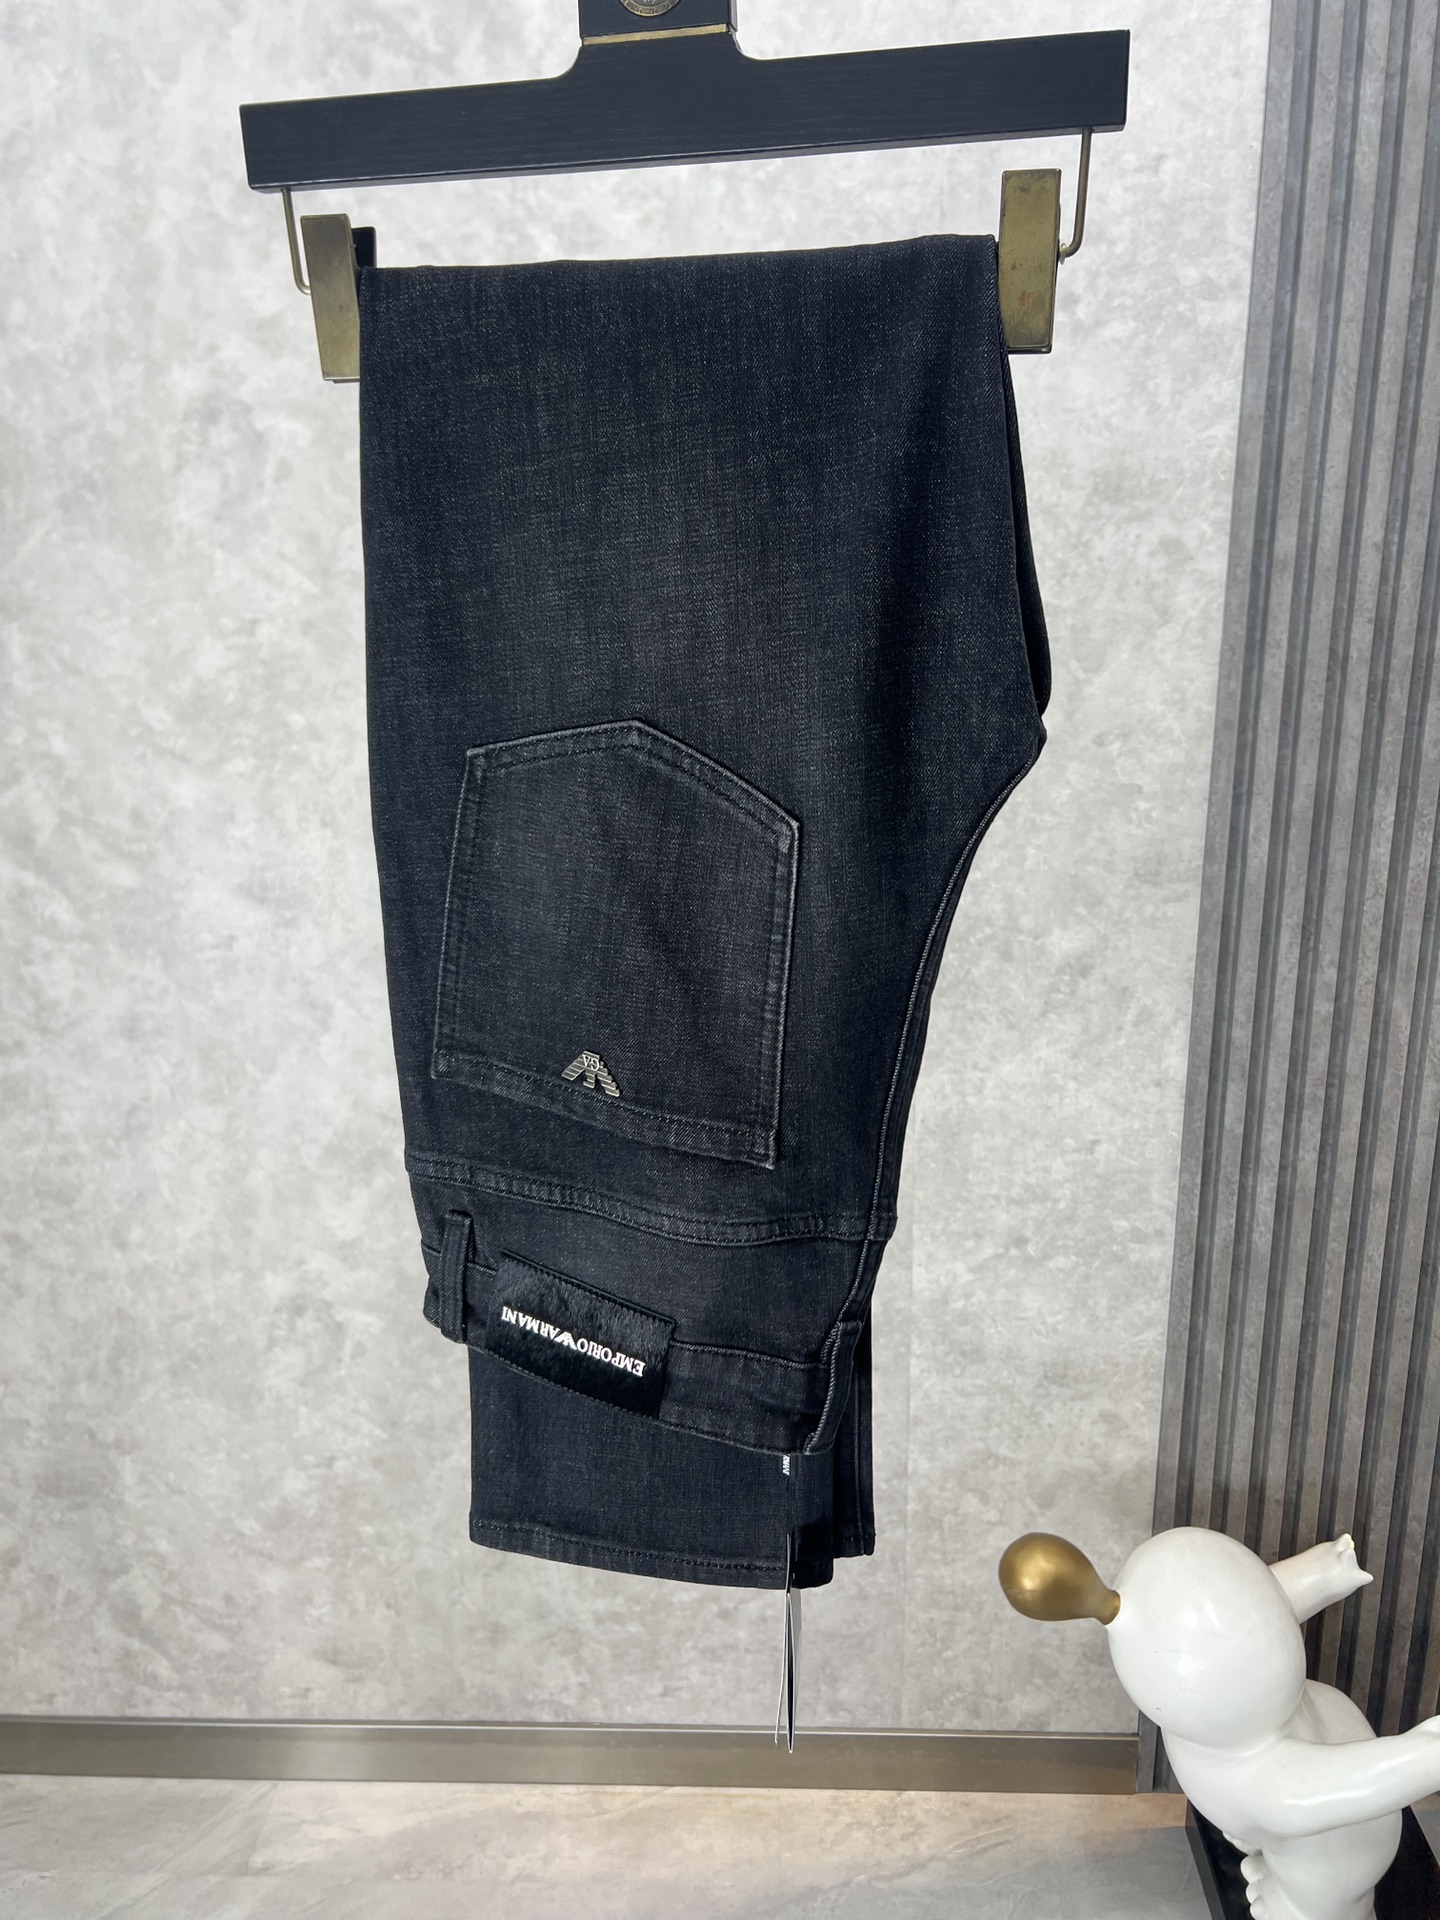 Armani阿玛尼高端定制24原单牛仔裤柜台同步发售原版定制复刻客供五金辅料原单品质进口牛仔面料重工洗水